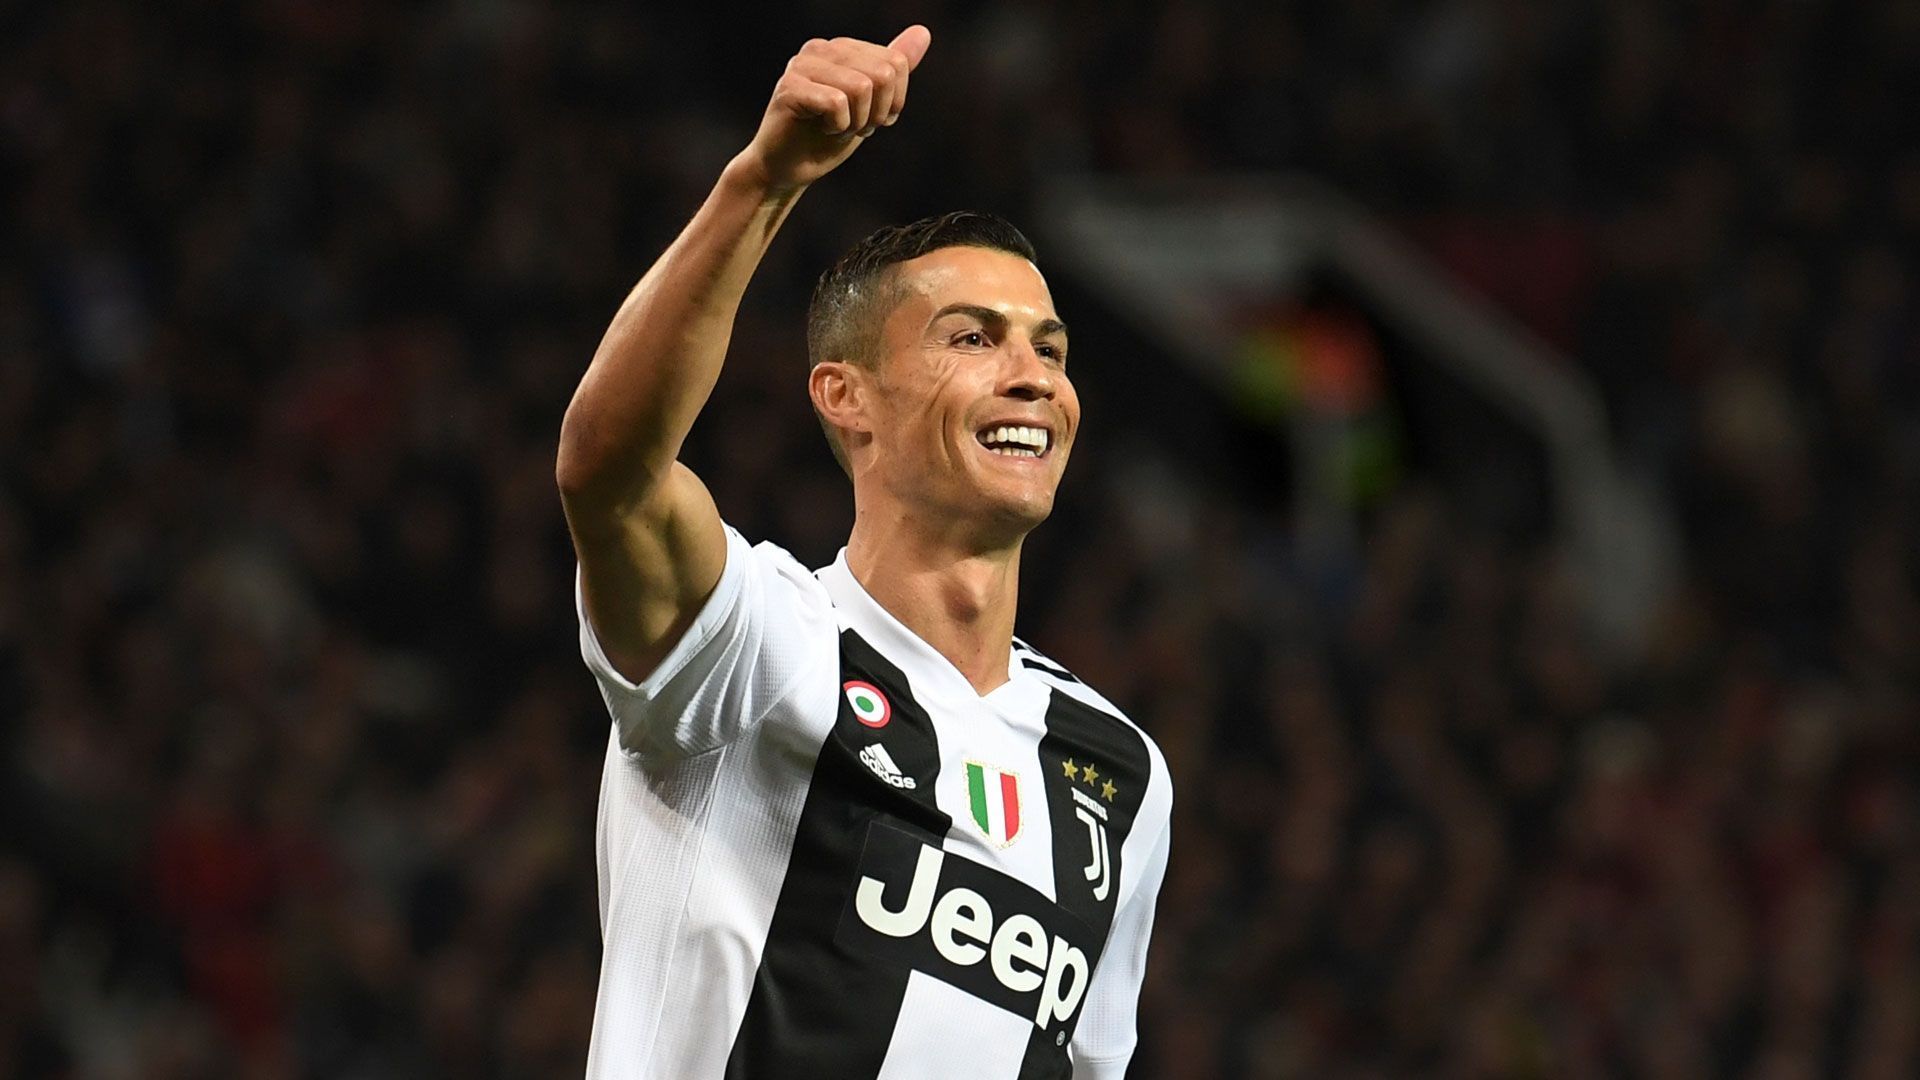 
                <strong>Einziger Spieler mit zehn Toren gegen einen Gegner in der Champions League</strong><br>
                Ausgerechnet gegen seinen Ex-Klub Juventus Turin erzielte Cristiano Ronaldo als einziger Spieler überhaupt zehn Treffer gegen einen Kontrahenten in der Königsklasse. 
              